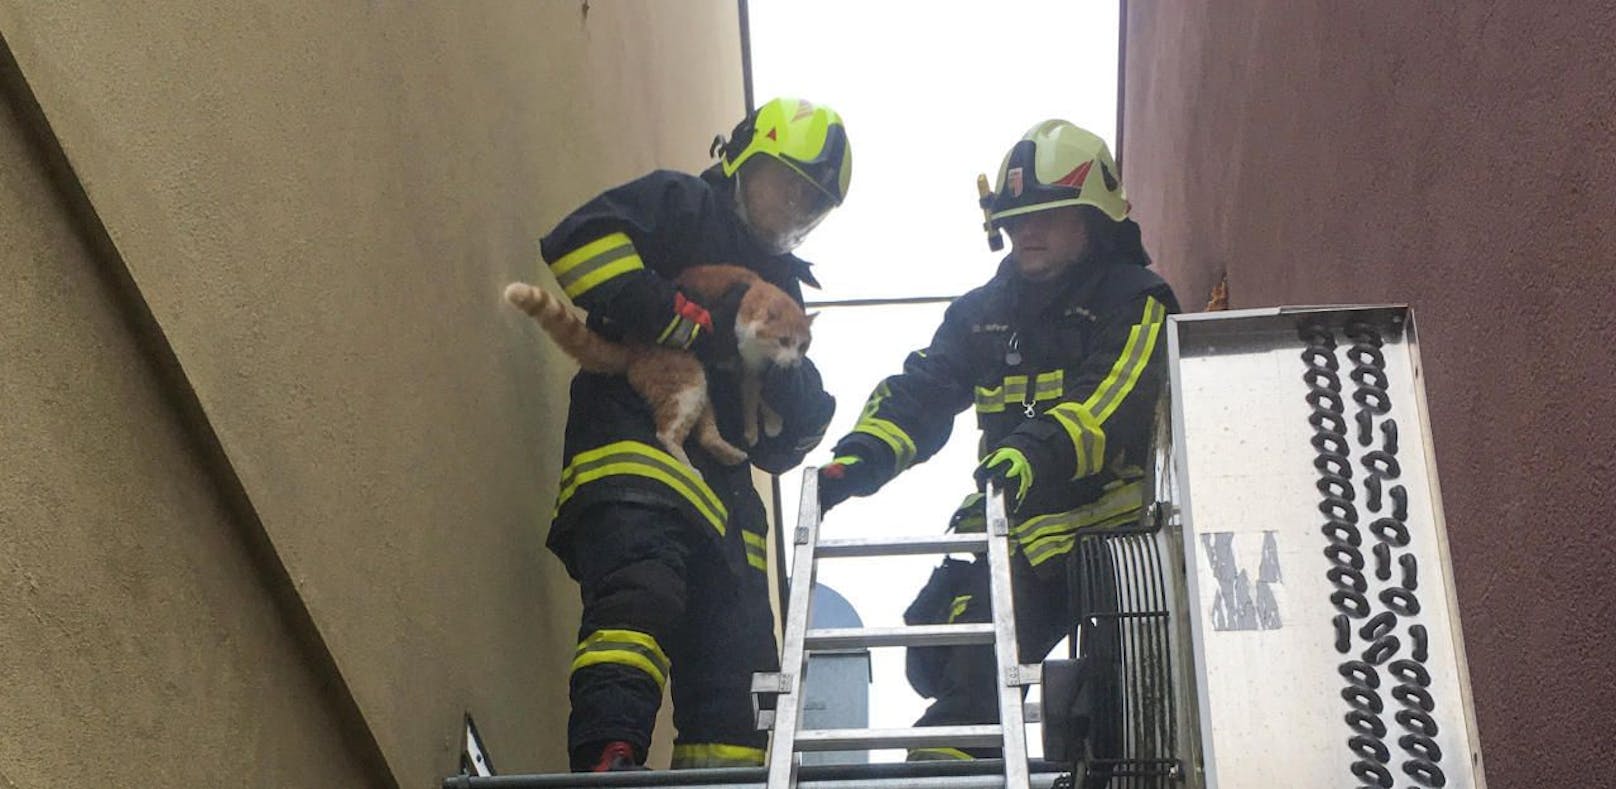 Feuerwehr befreite in Schacht gestürzte Katze